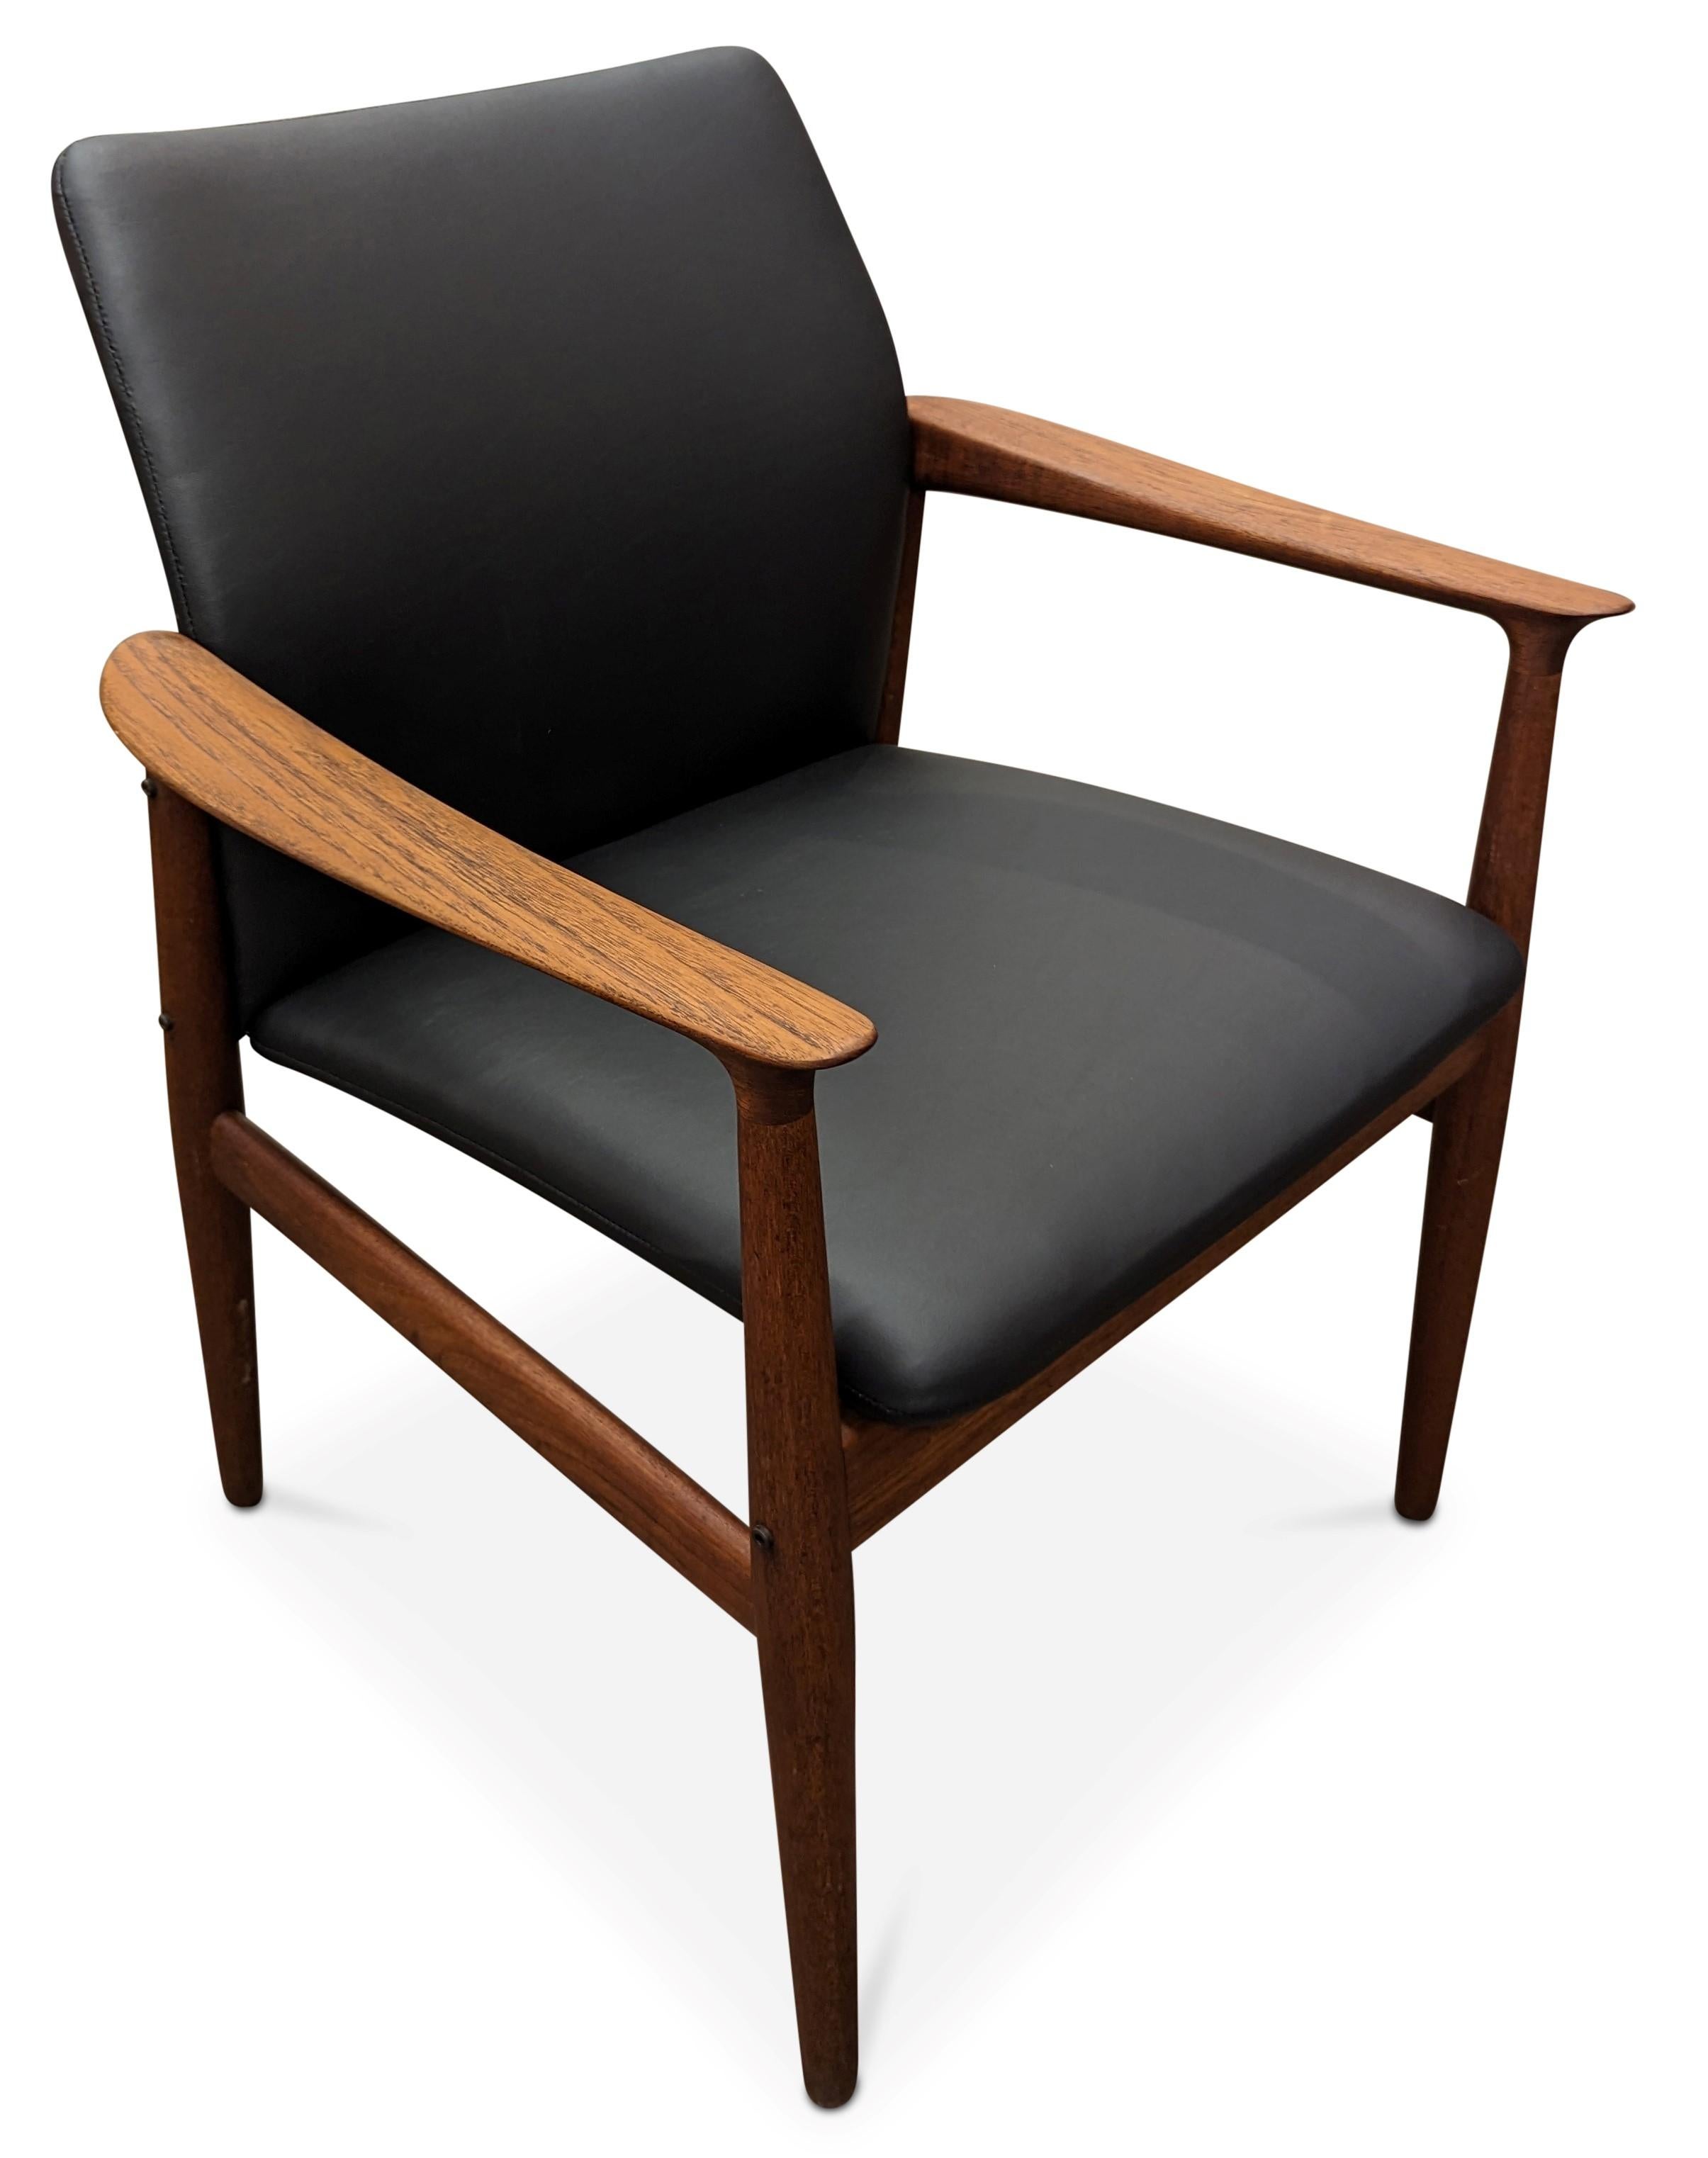 Mid-20th Century Vintage Danish Mid Century Grethe Jalk for Glostrup Teak Chair - 082314